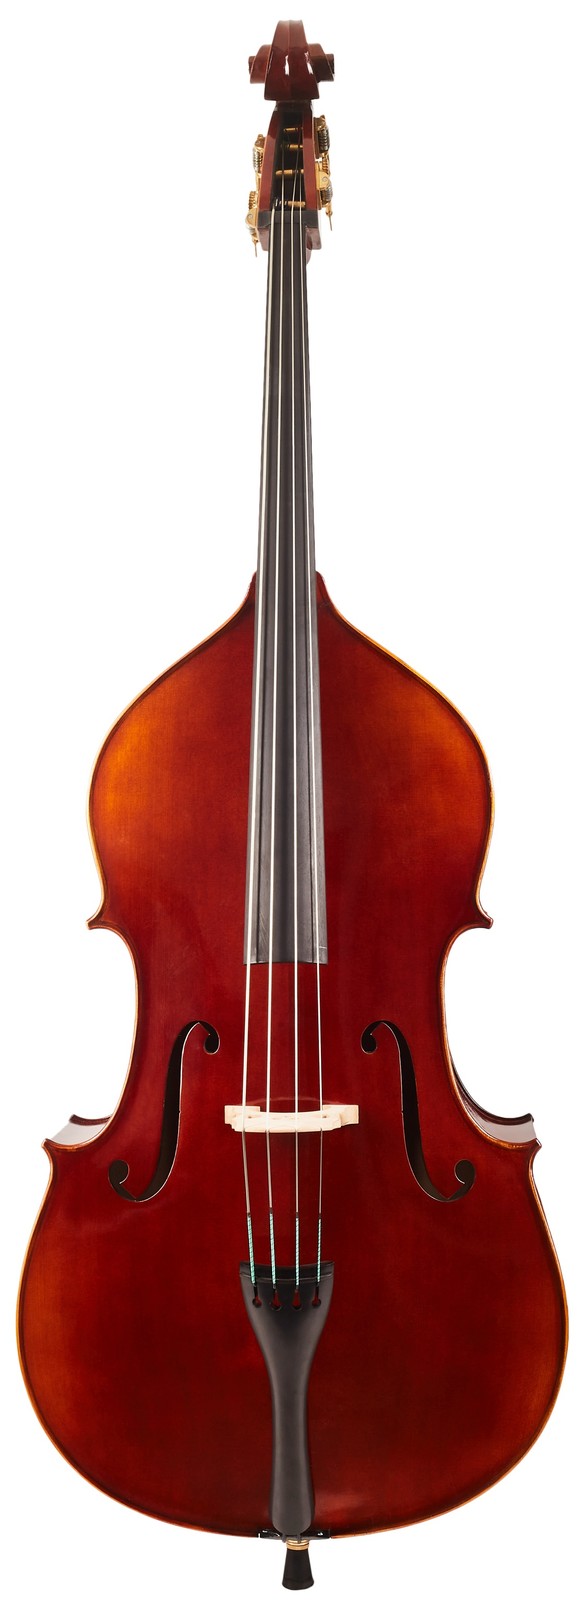 Bacio Instruments HB100 Concert Bass 3/4 (použité)